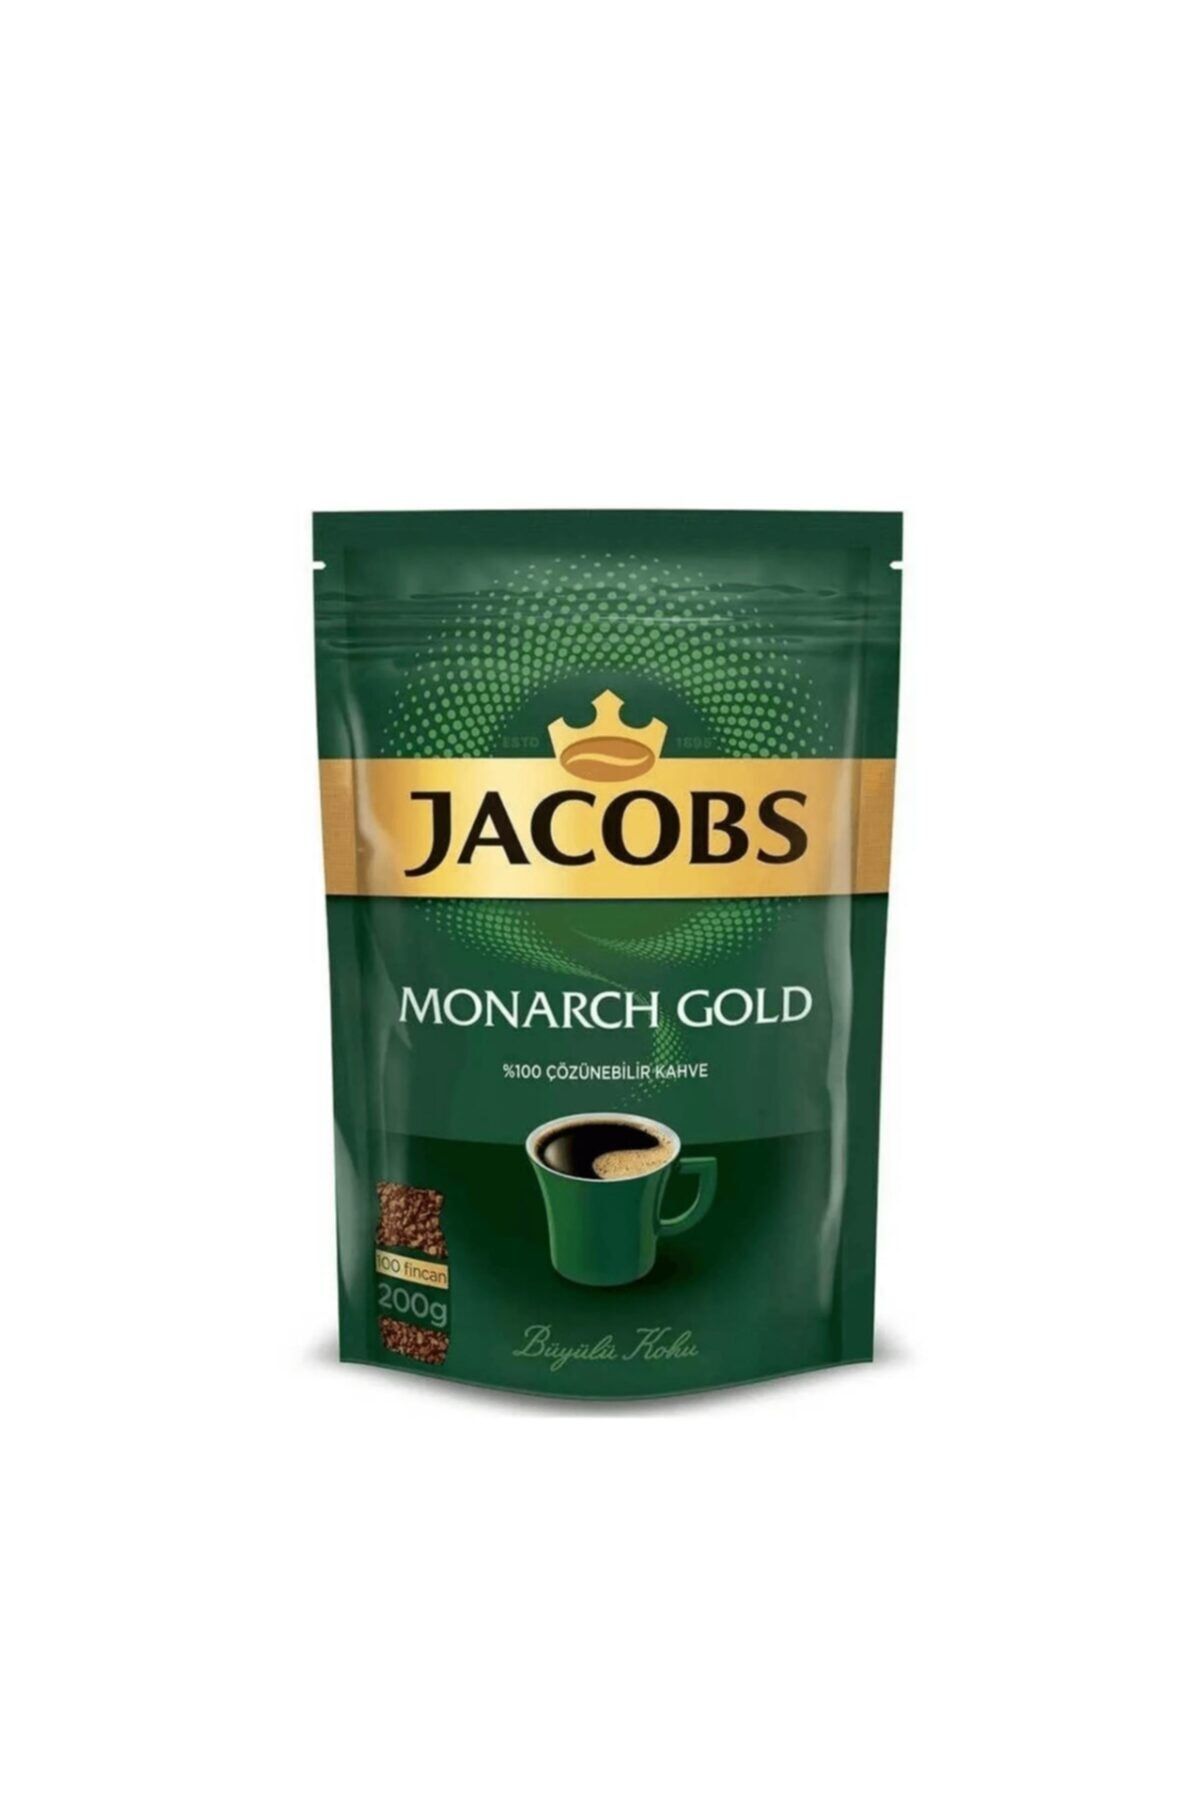 Jacobs Monarch Gold Eko Paket 200 gr Çözünebilir Kahve